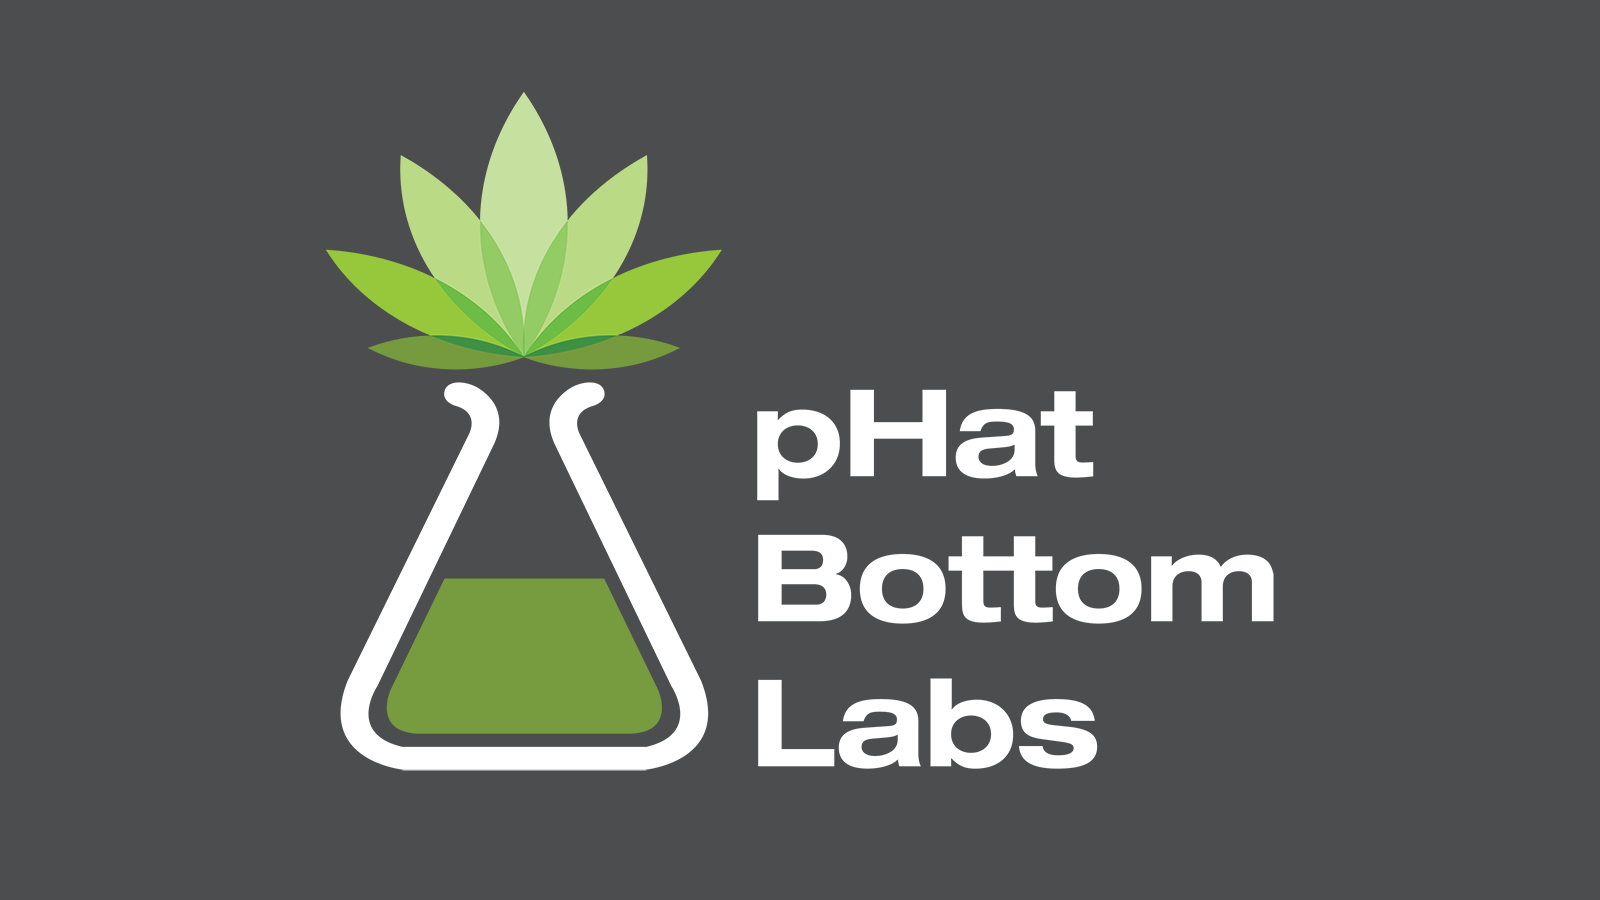 Phat Bottom